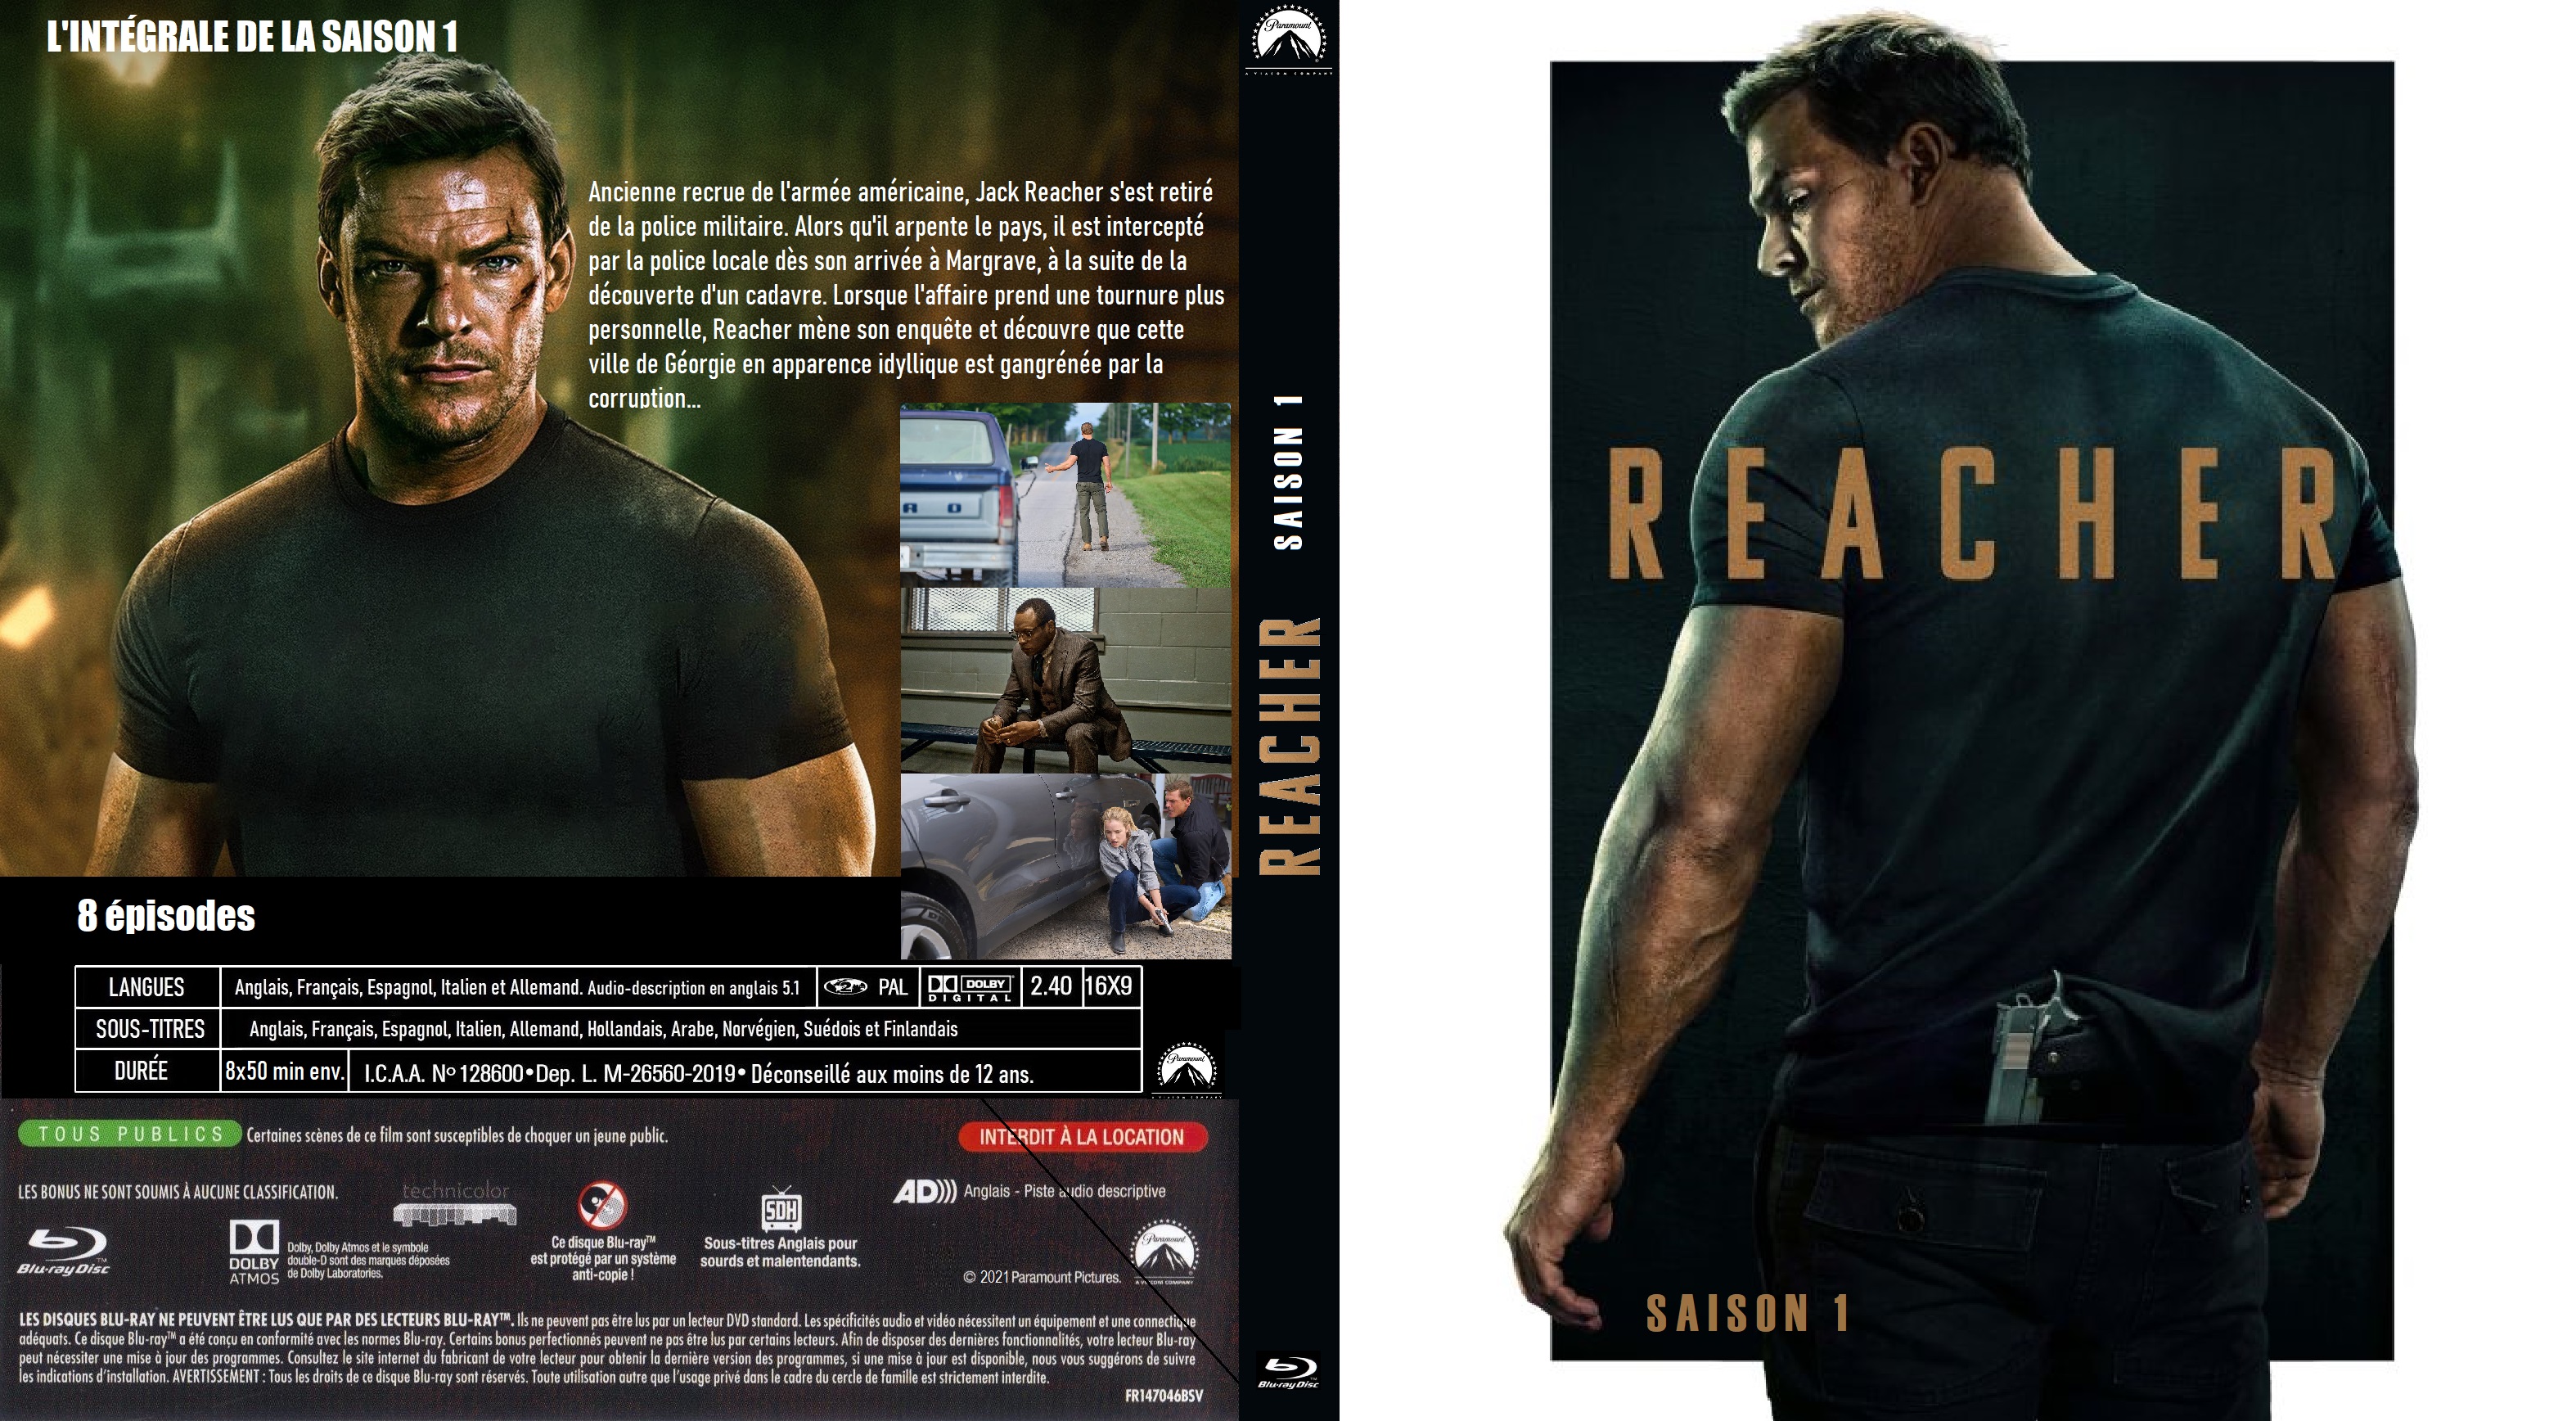 Jaquette DVD Reacher saison 1  BLU RAY custom